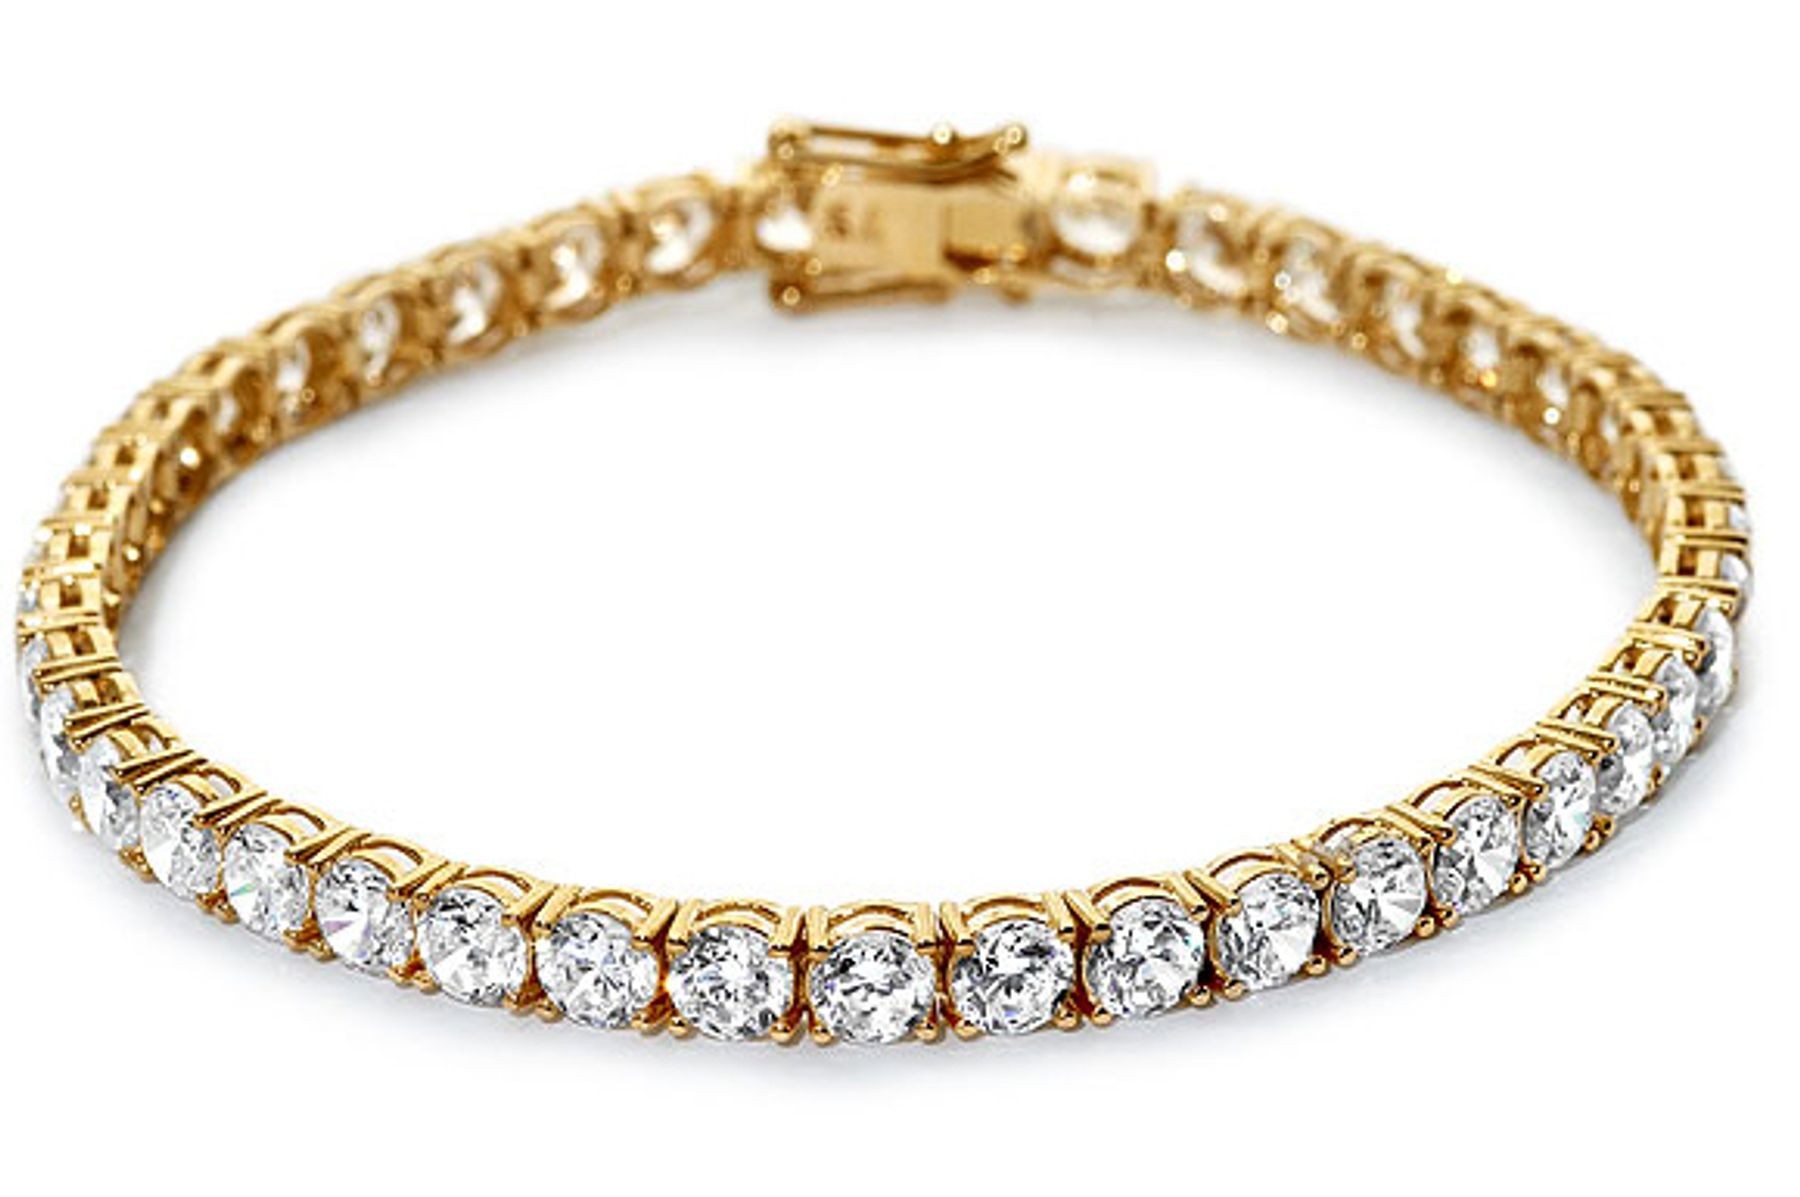 View Diamond Bracelet | Diamond Grades